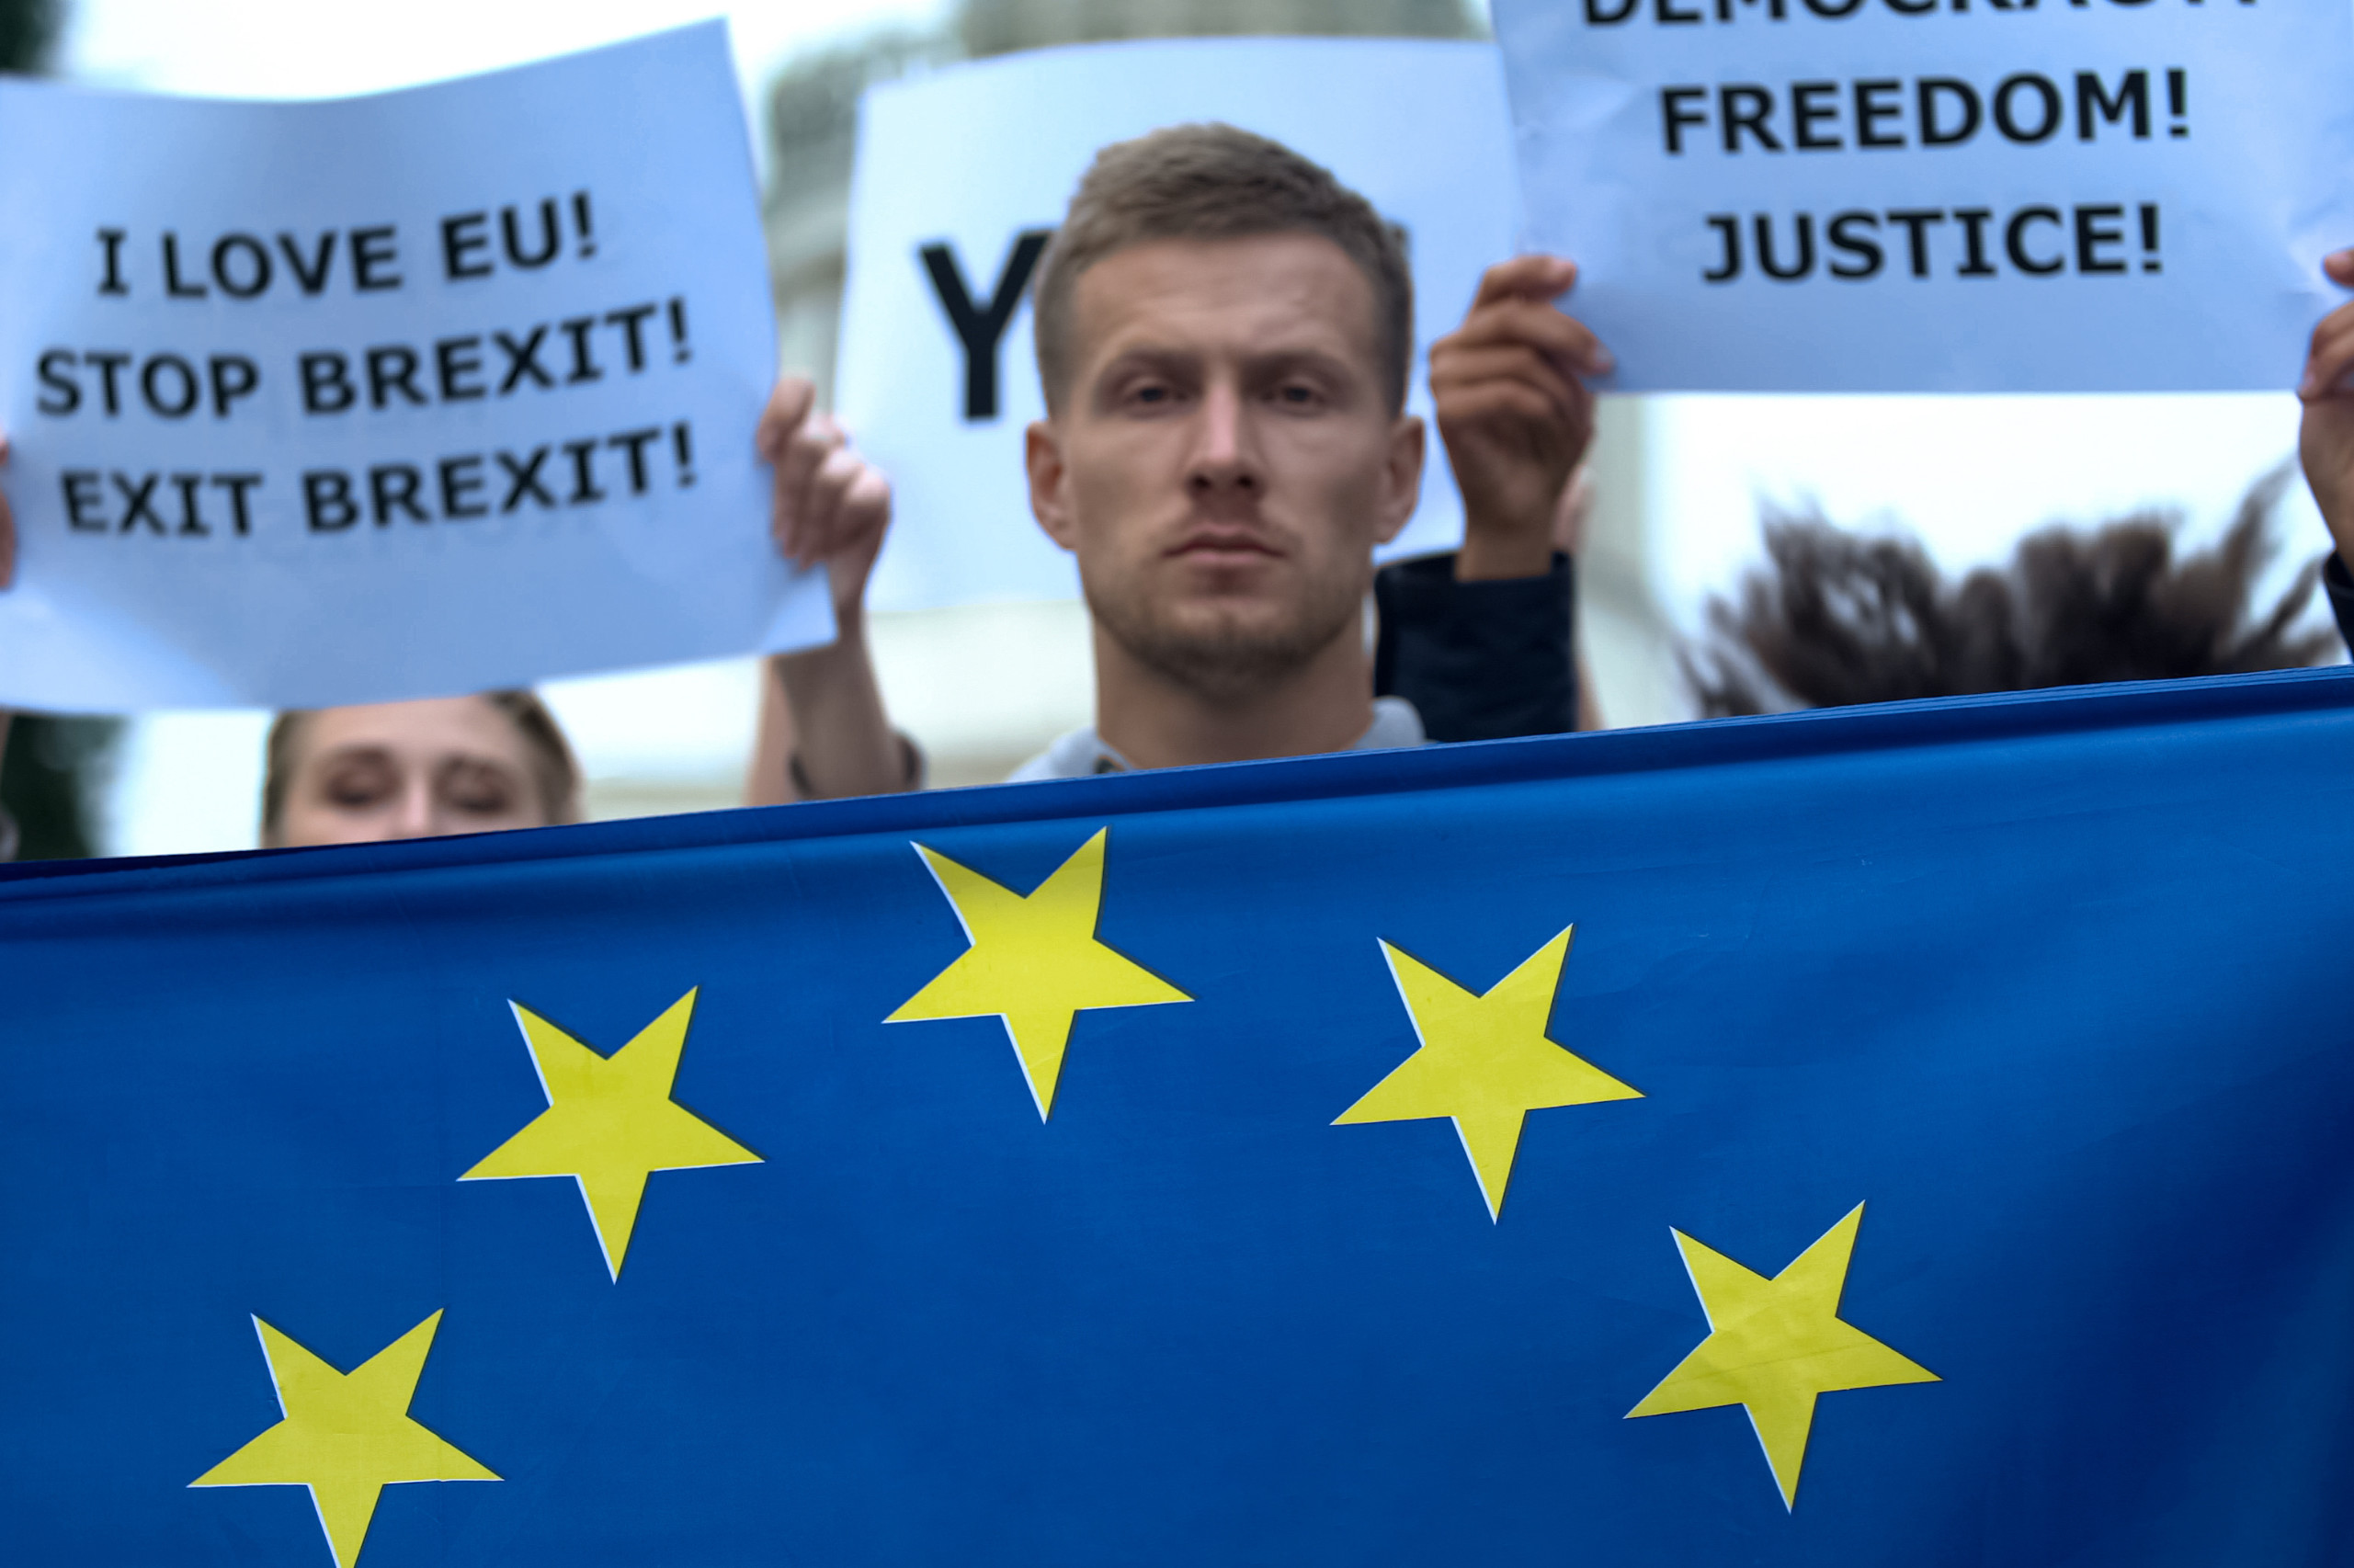 Protest zum Brexit. Die Themen im Europäischen Jahr der Jugend sind vielschichtig. Aber für alle relevant.